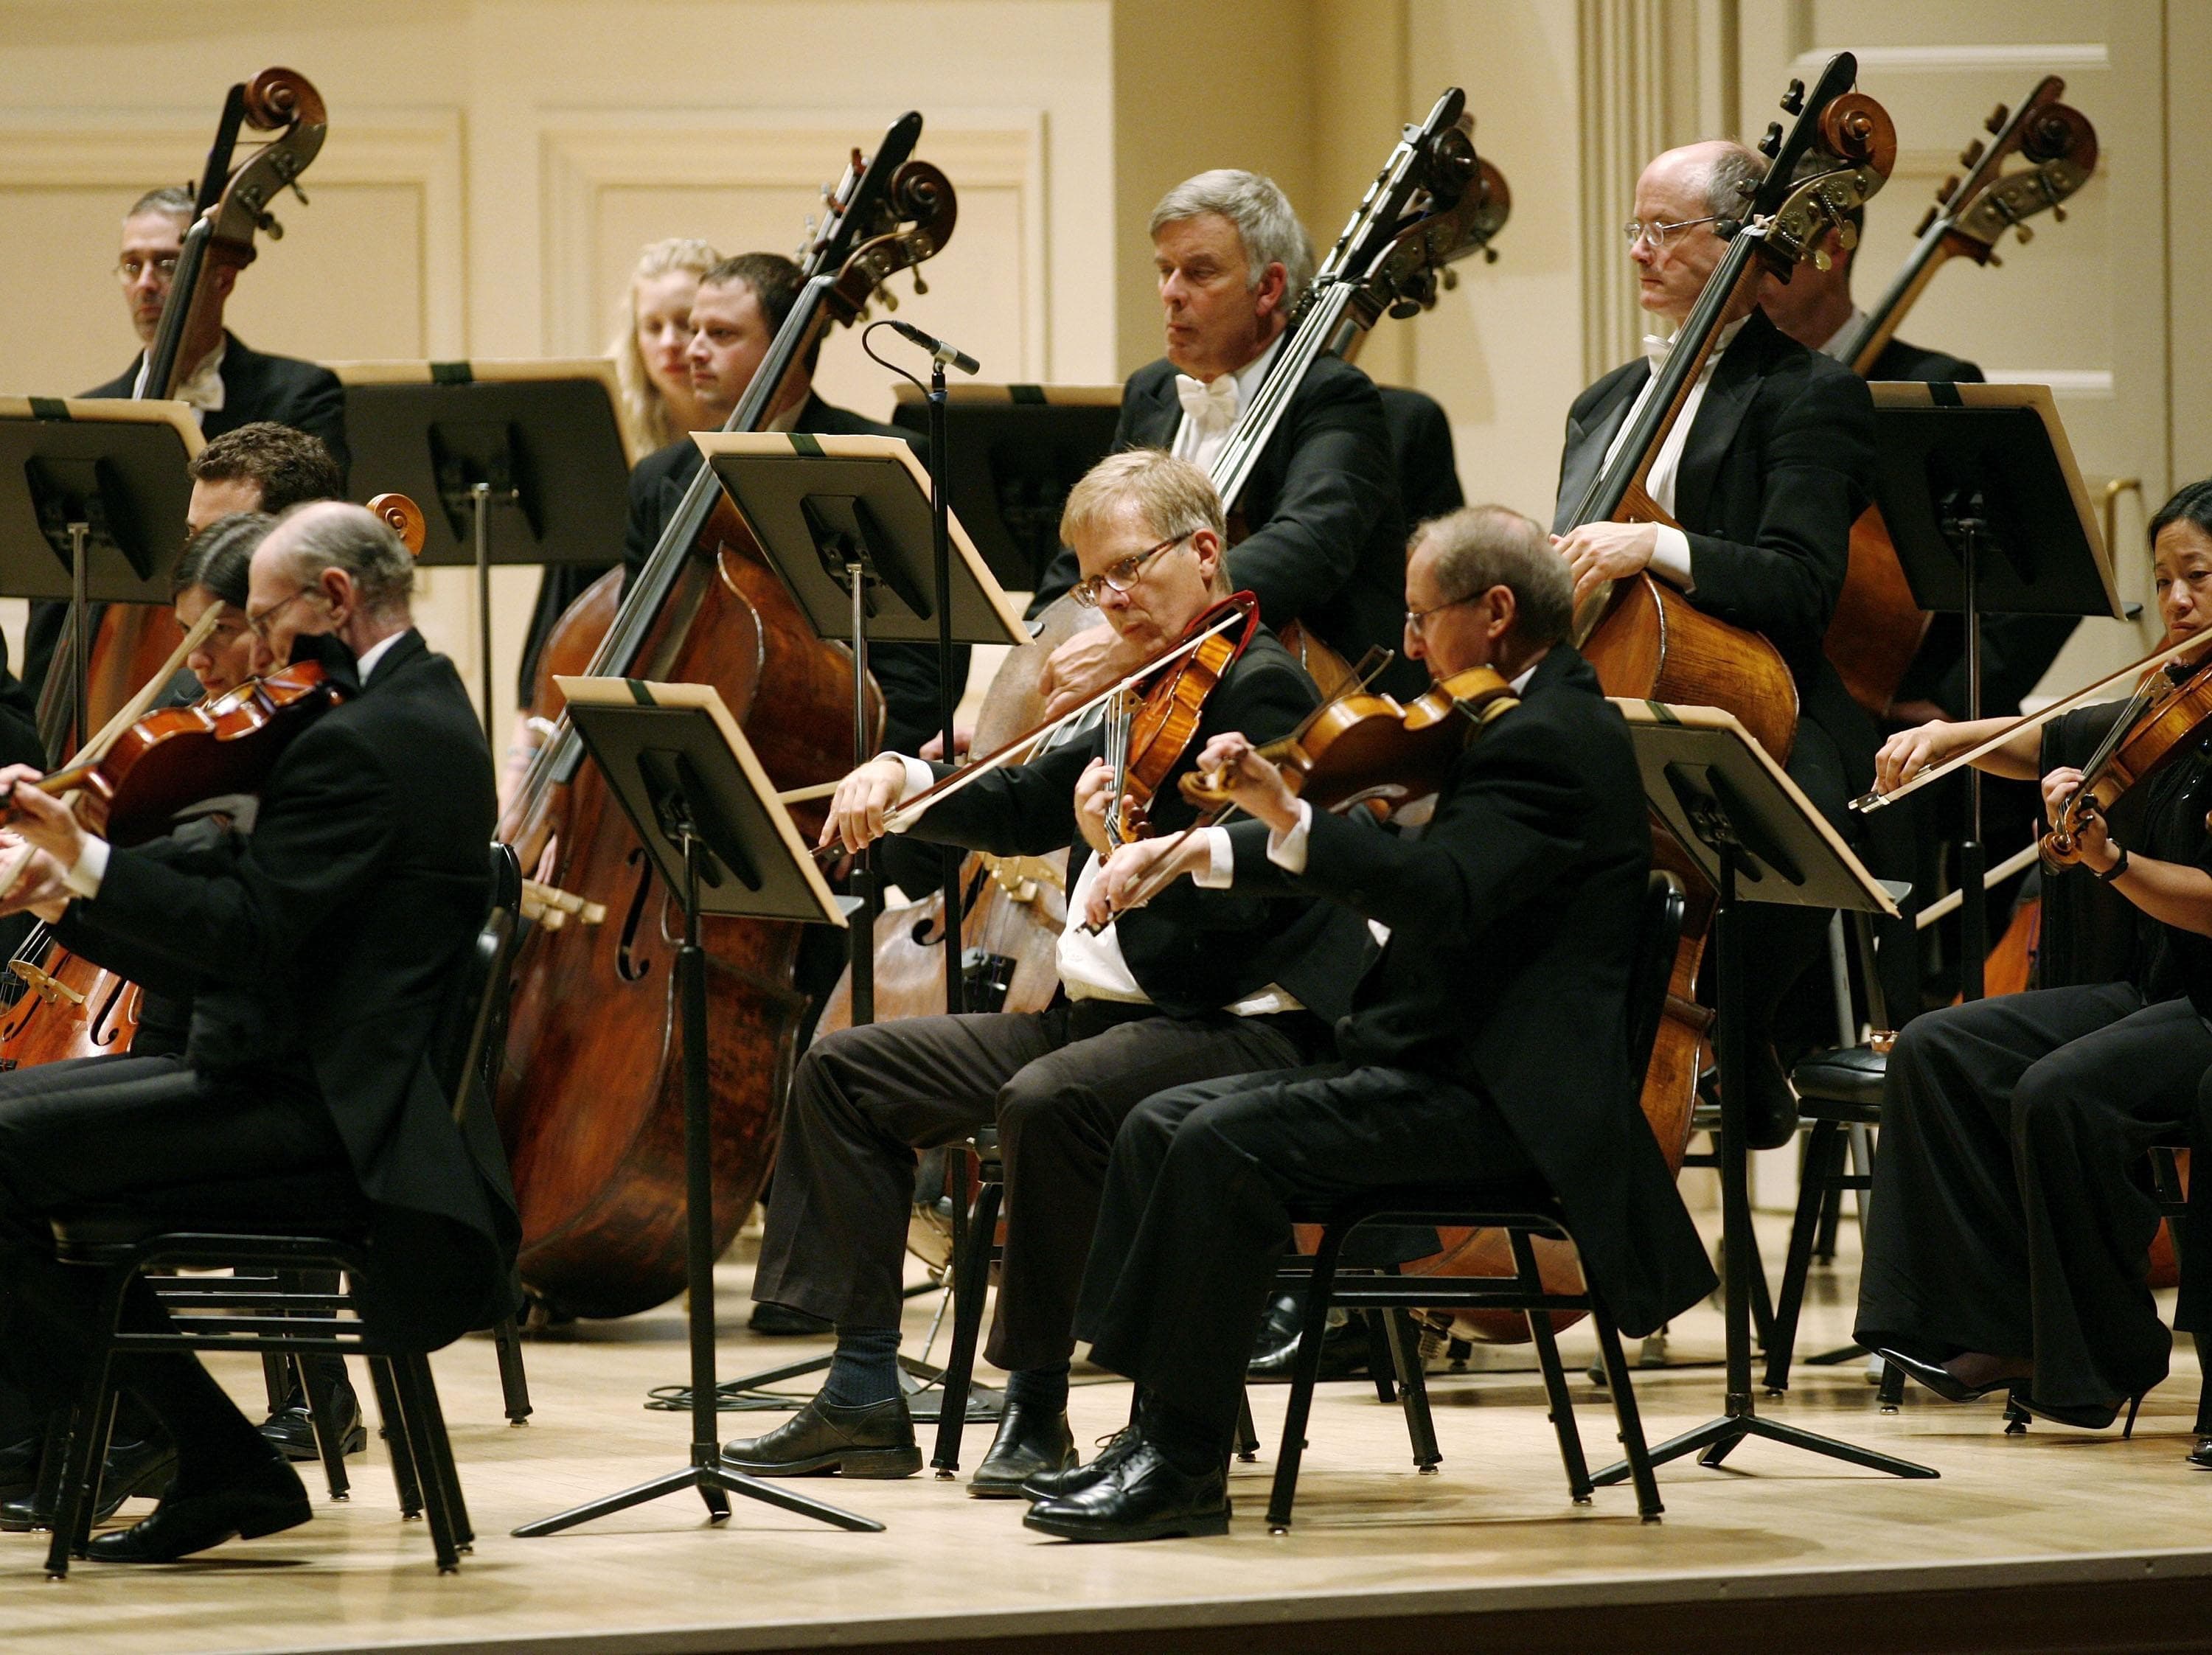 Бостонский Симфони-Холл. Лягушки играющие оркестр. Человек играющий в оркестре